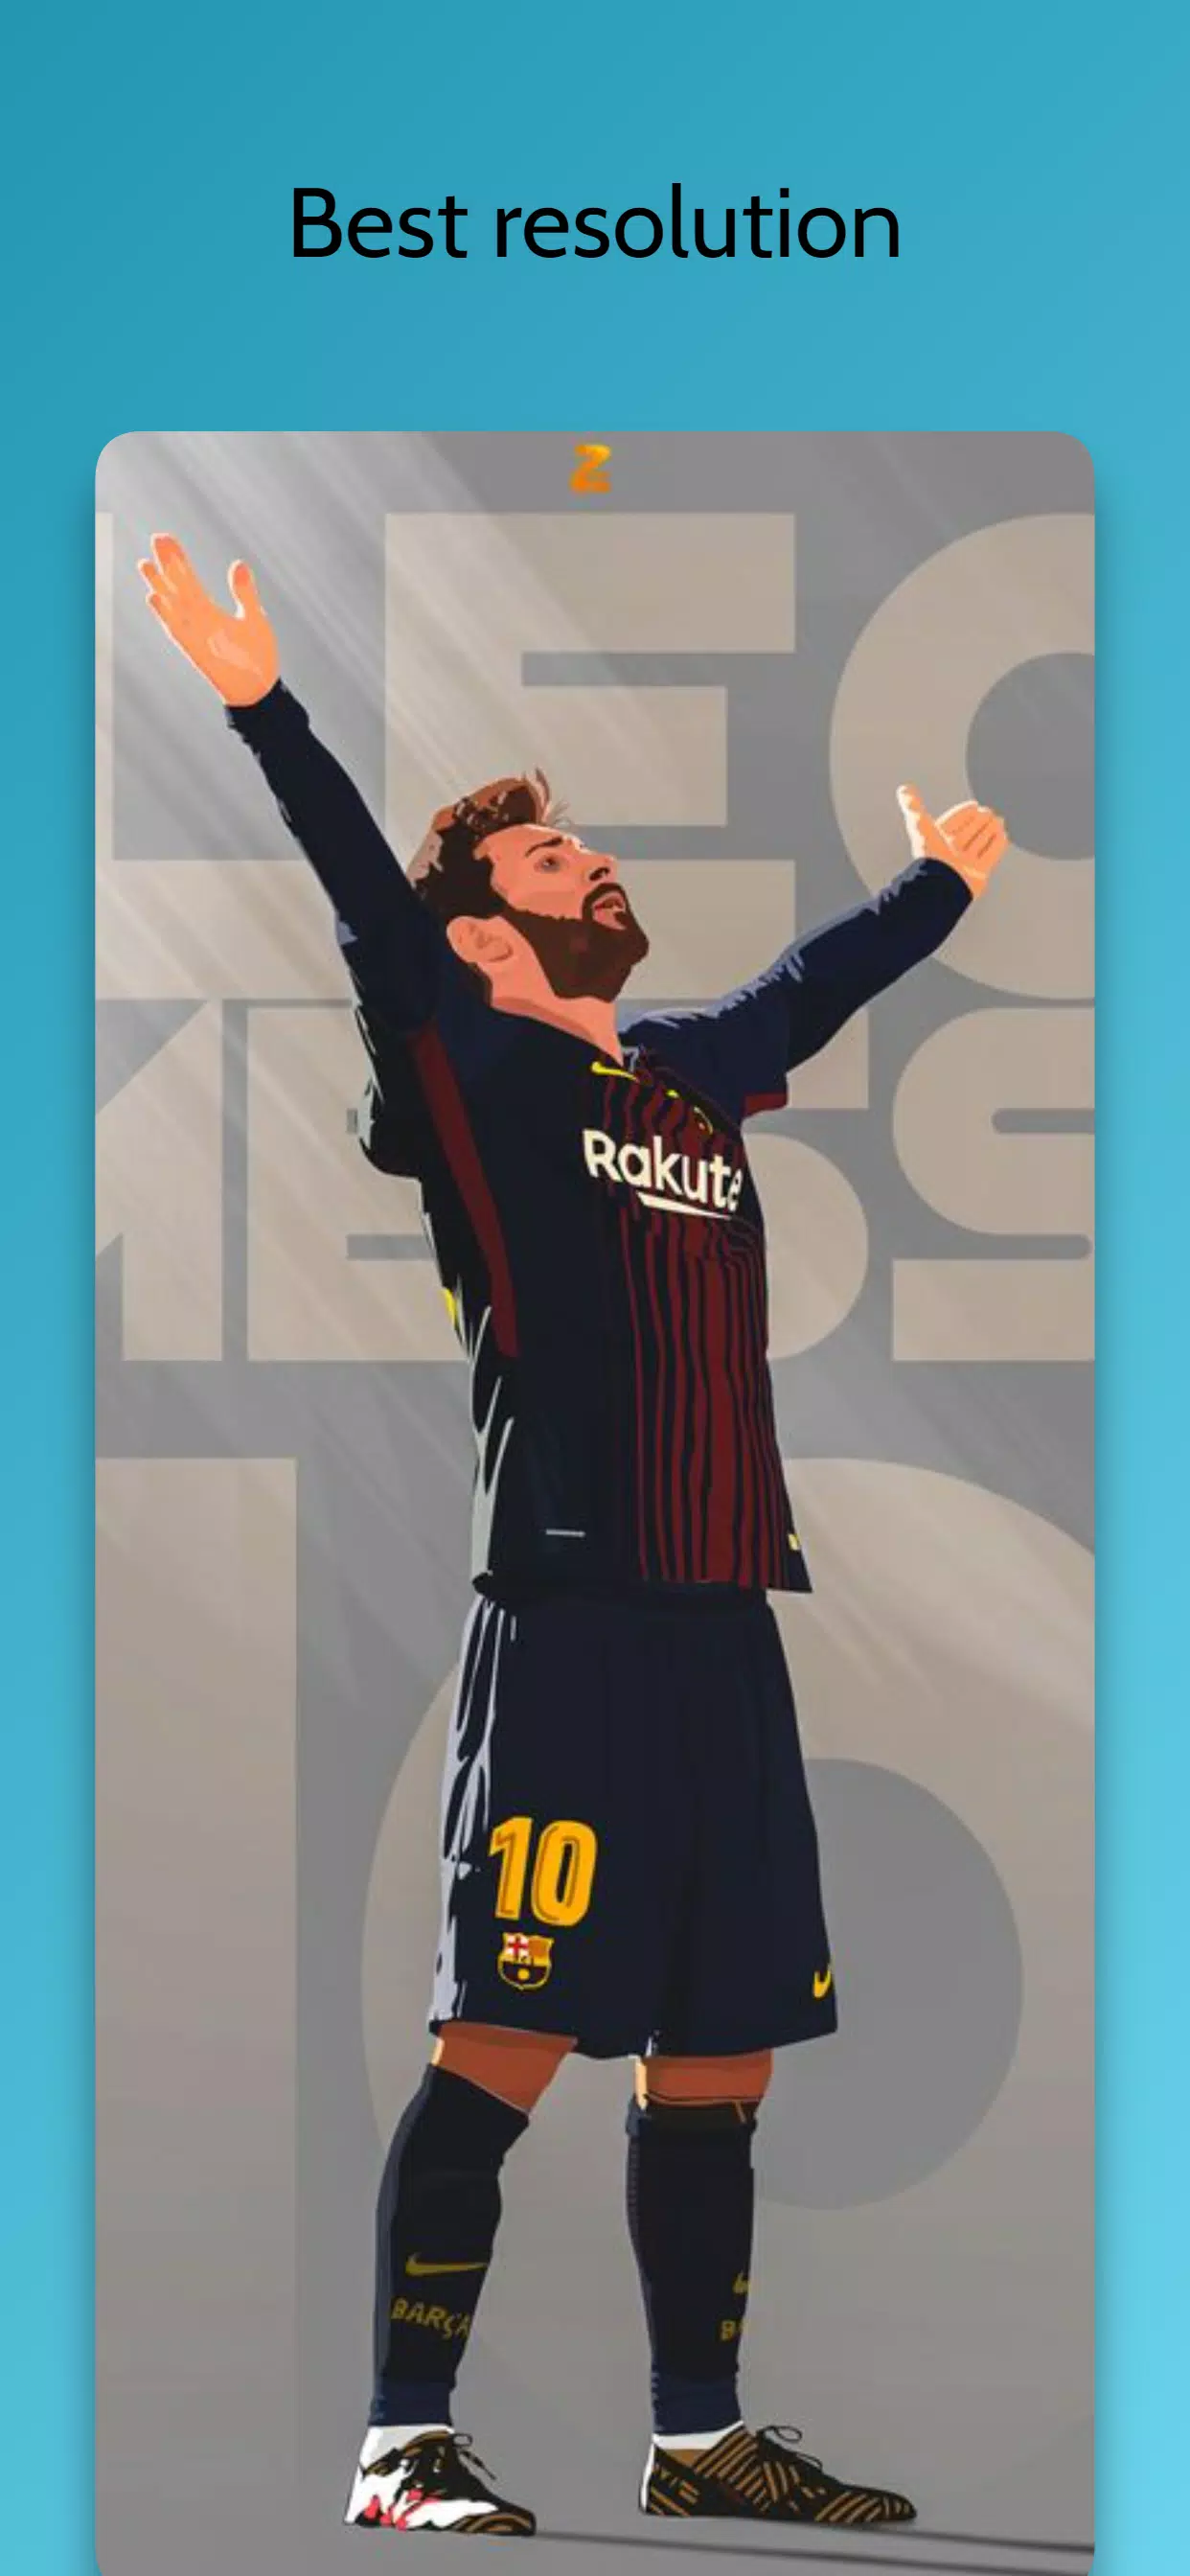 Chất liệu, thiết kế, màu sắc, tất cả bao giờ cũng được chăm chút tỉ mỉ với Messi Wallpaper. Nếu bạn là người yêu thích Messi, hãy thử sự khác biệt của những chiếc hình nền này và cảm nhận sự tinh tế và sang chảnh nhất định sẽ giúp bạn thích thú.